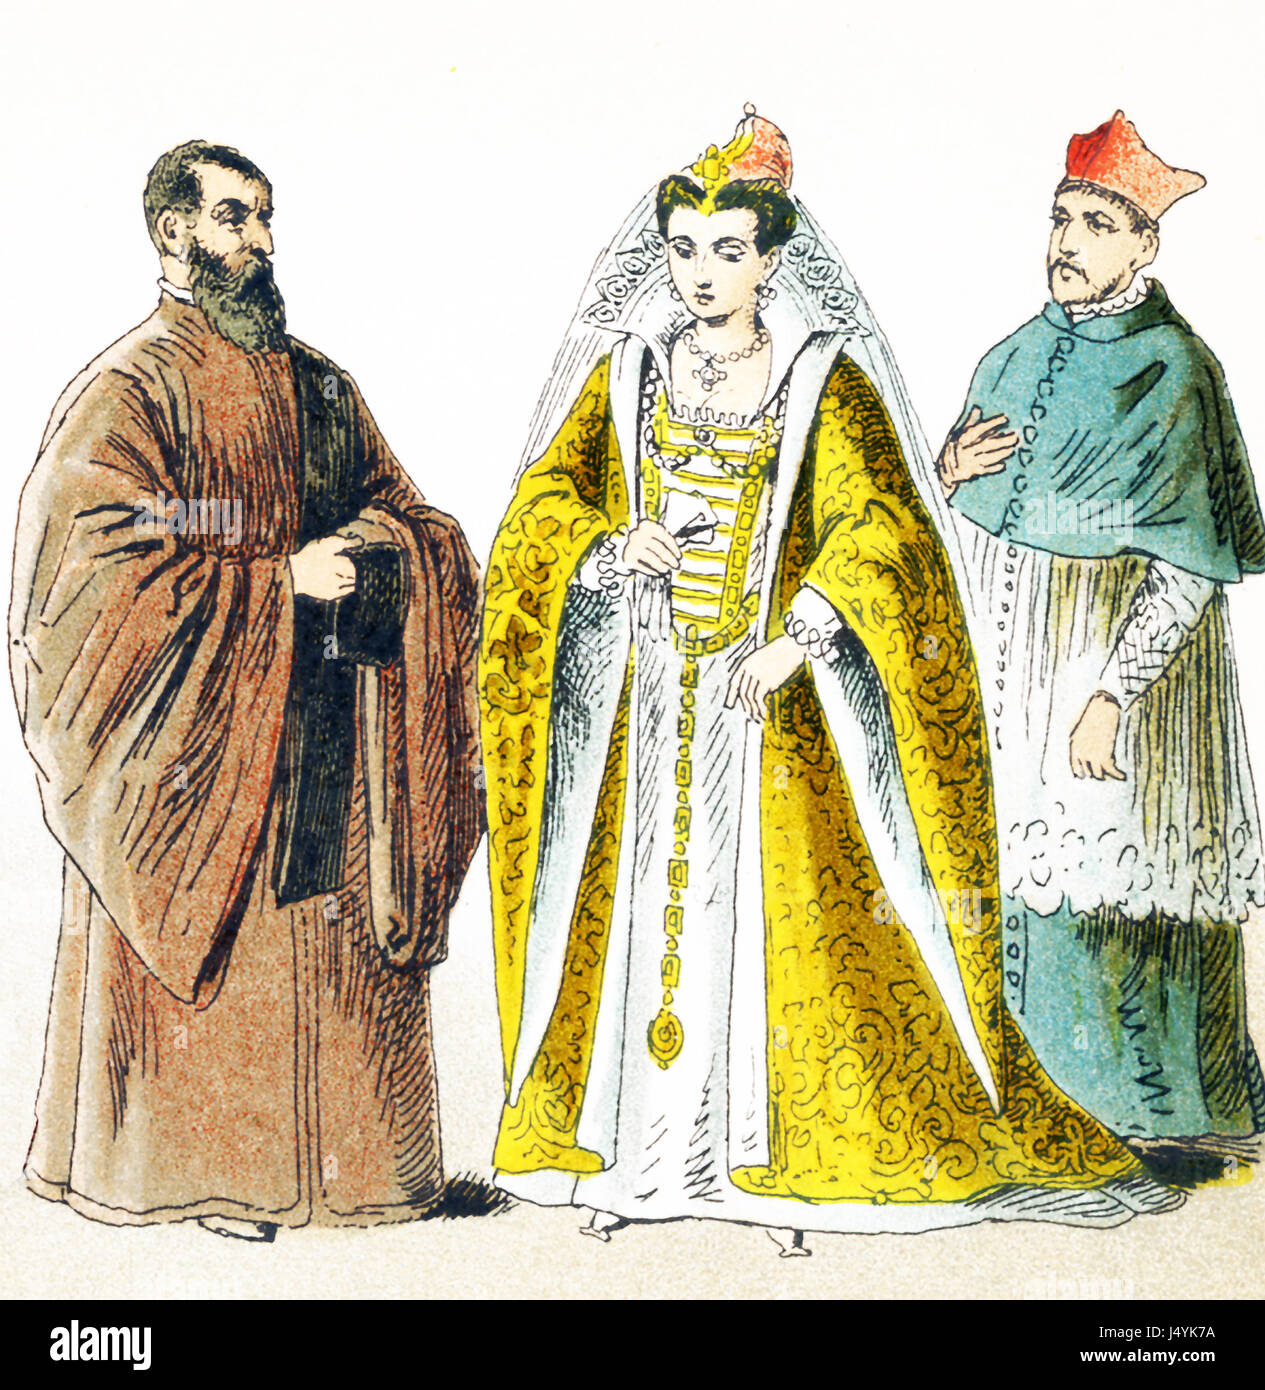 Le figure raffigurate qui rappresentare gli italiani attorno al 1500 D.C. Essi sono da sinistra a destra: il procuratore di San Marco, moglie del Doge, il cardinale in abito da casa. L'illustrazione risale al 1882. Foto Stock